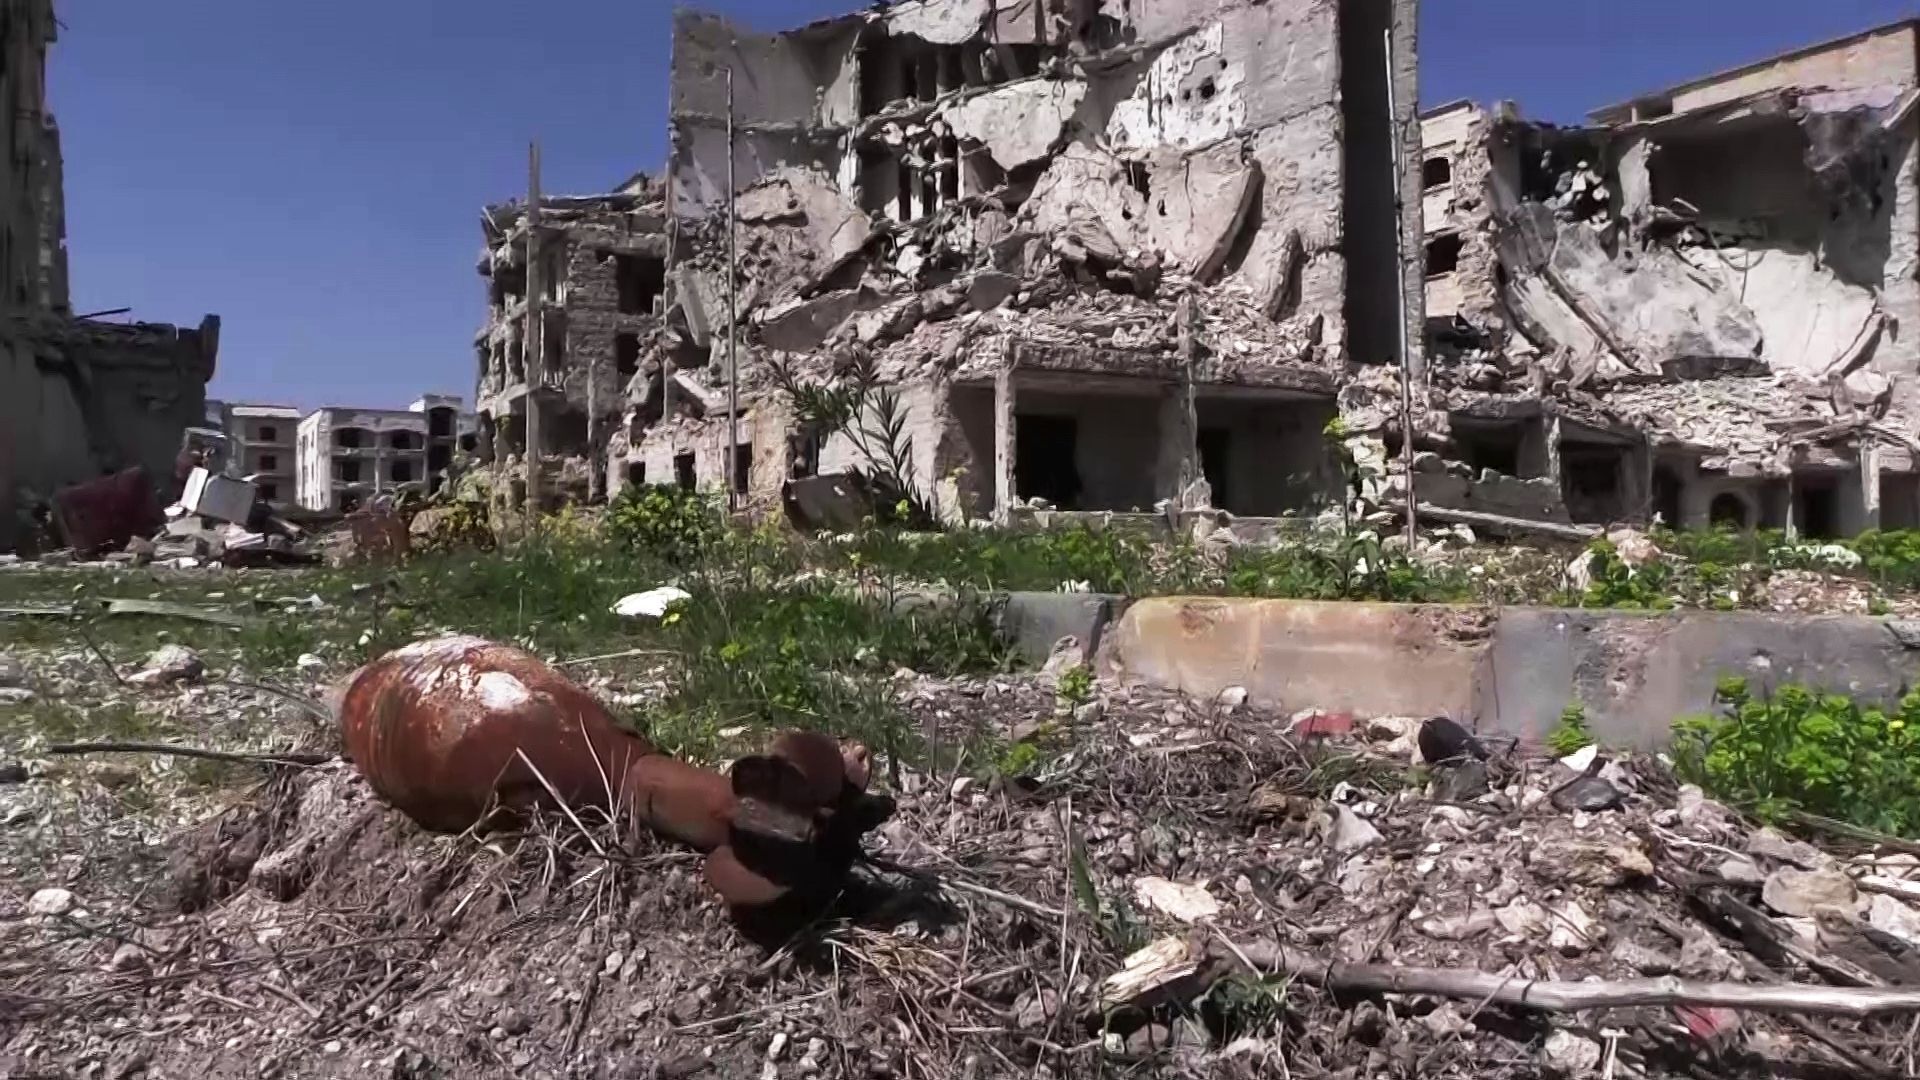 Разрушенные дома в районе Эль-Хамдания на окраине города Алеппо - Sputnik Армения, 1920, 26.02.2021